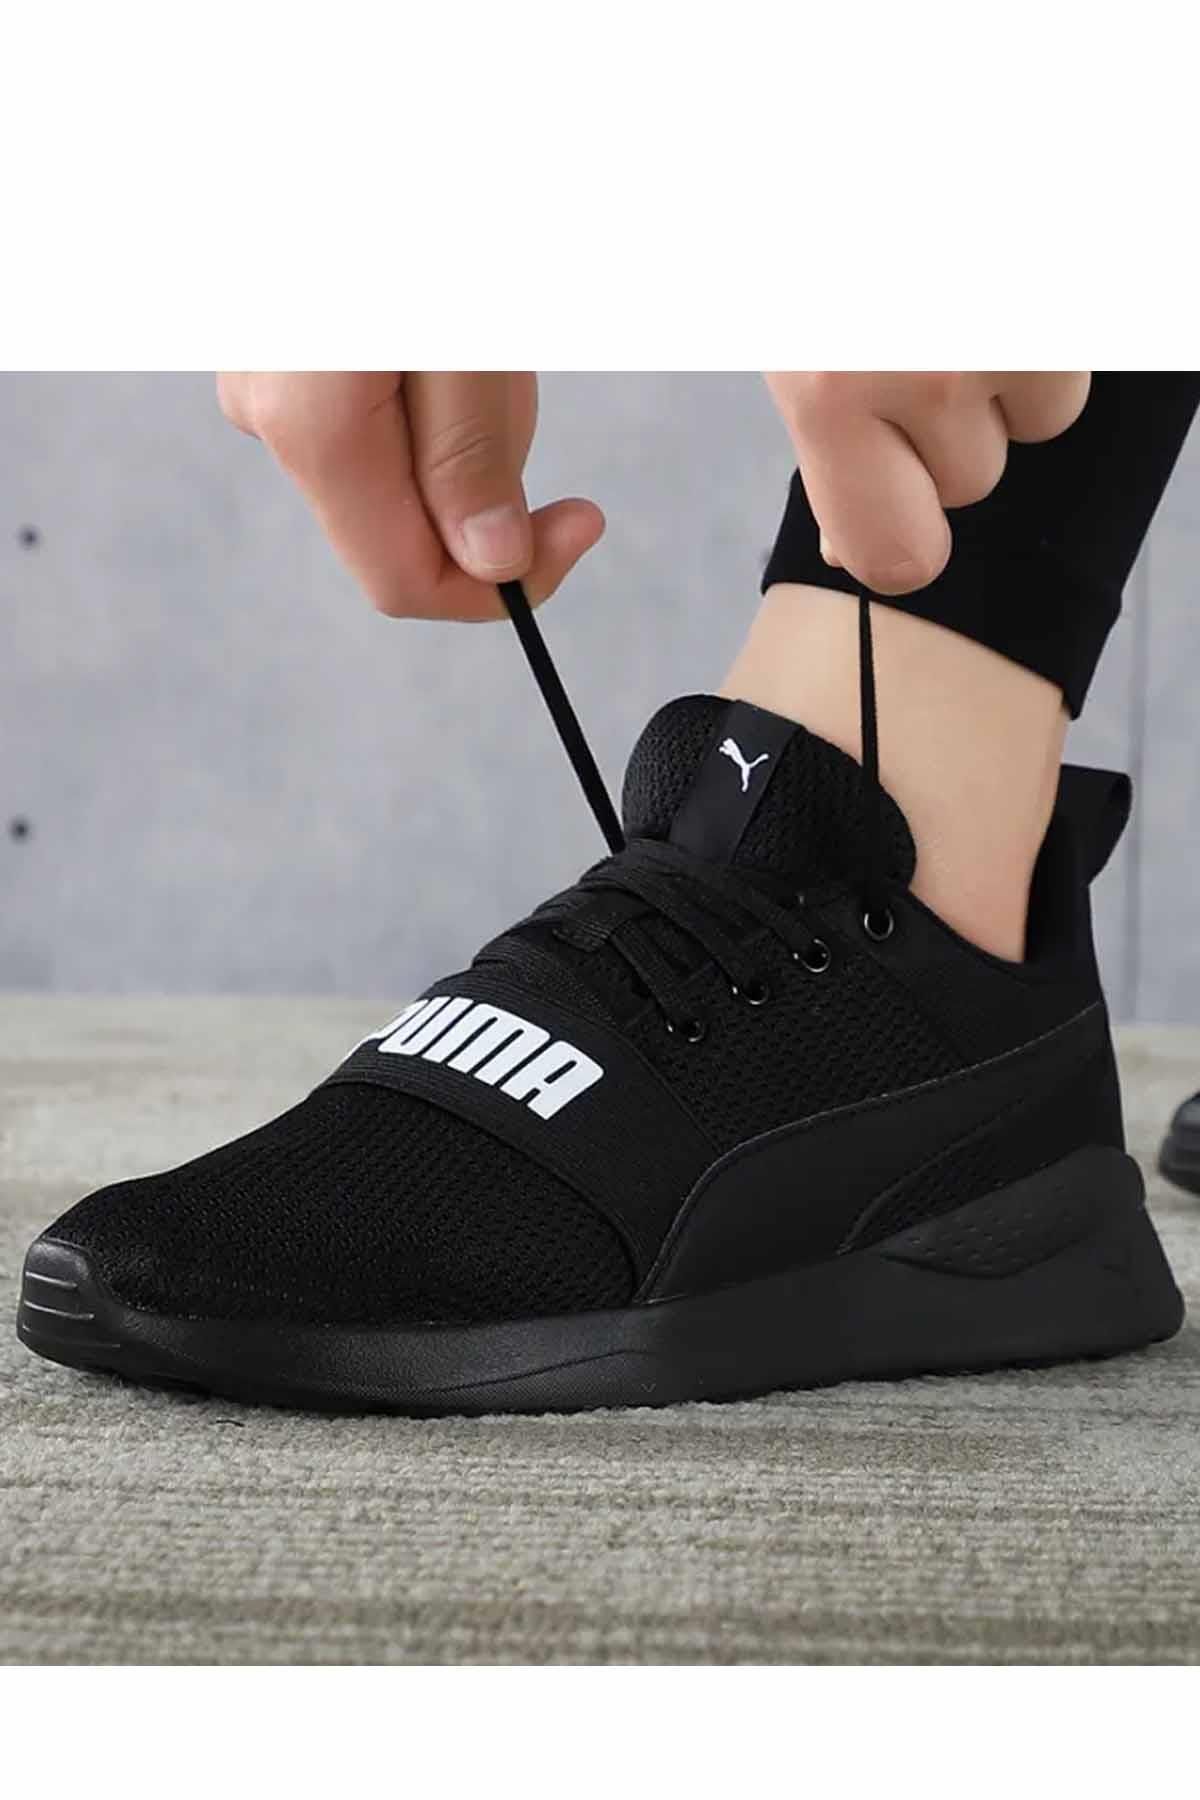 Puma Erkek Sneakers Anzarun Bold Unisex Günlük Spor Ayakkabı 372362-01-1 Siyah